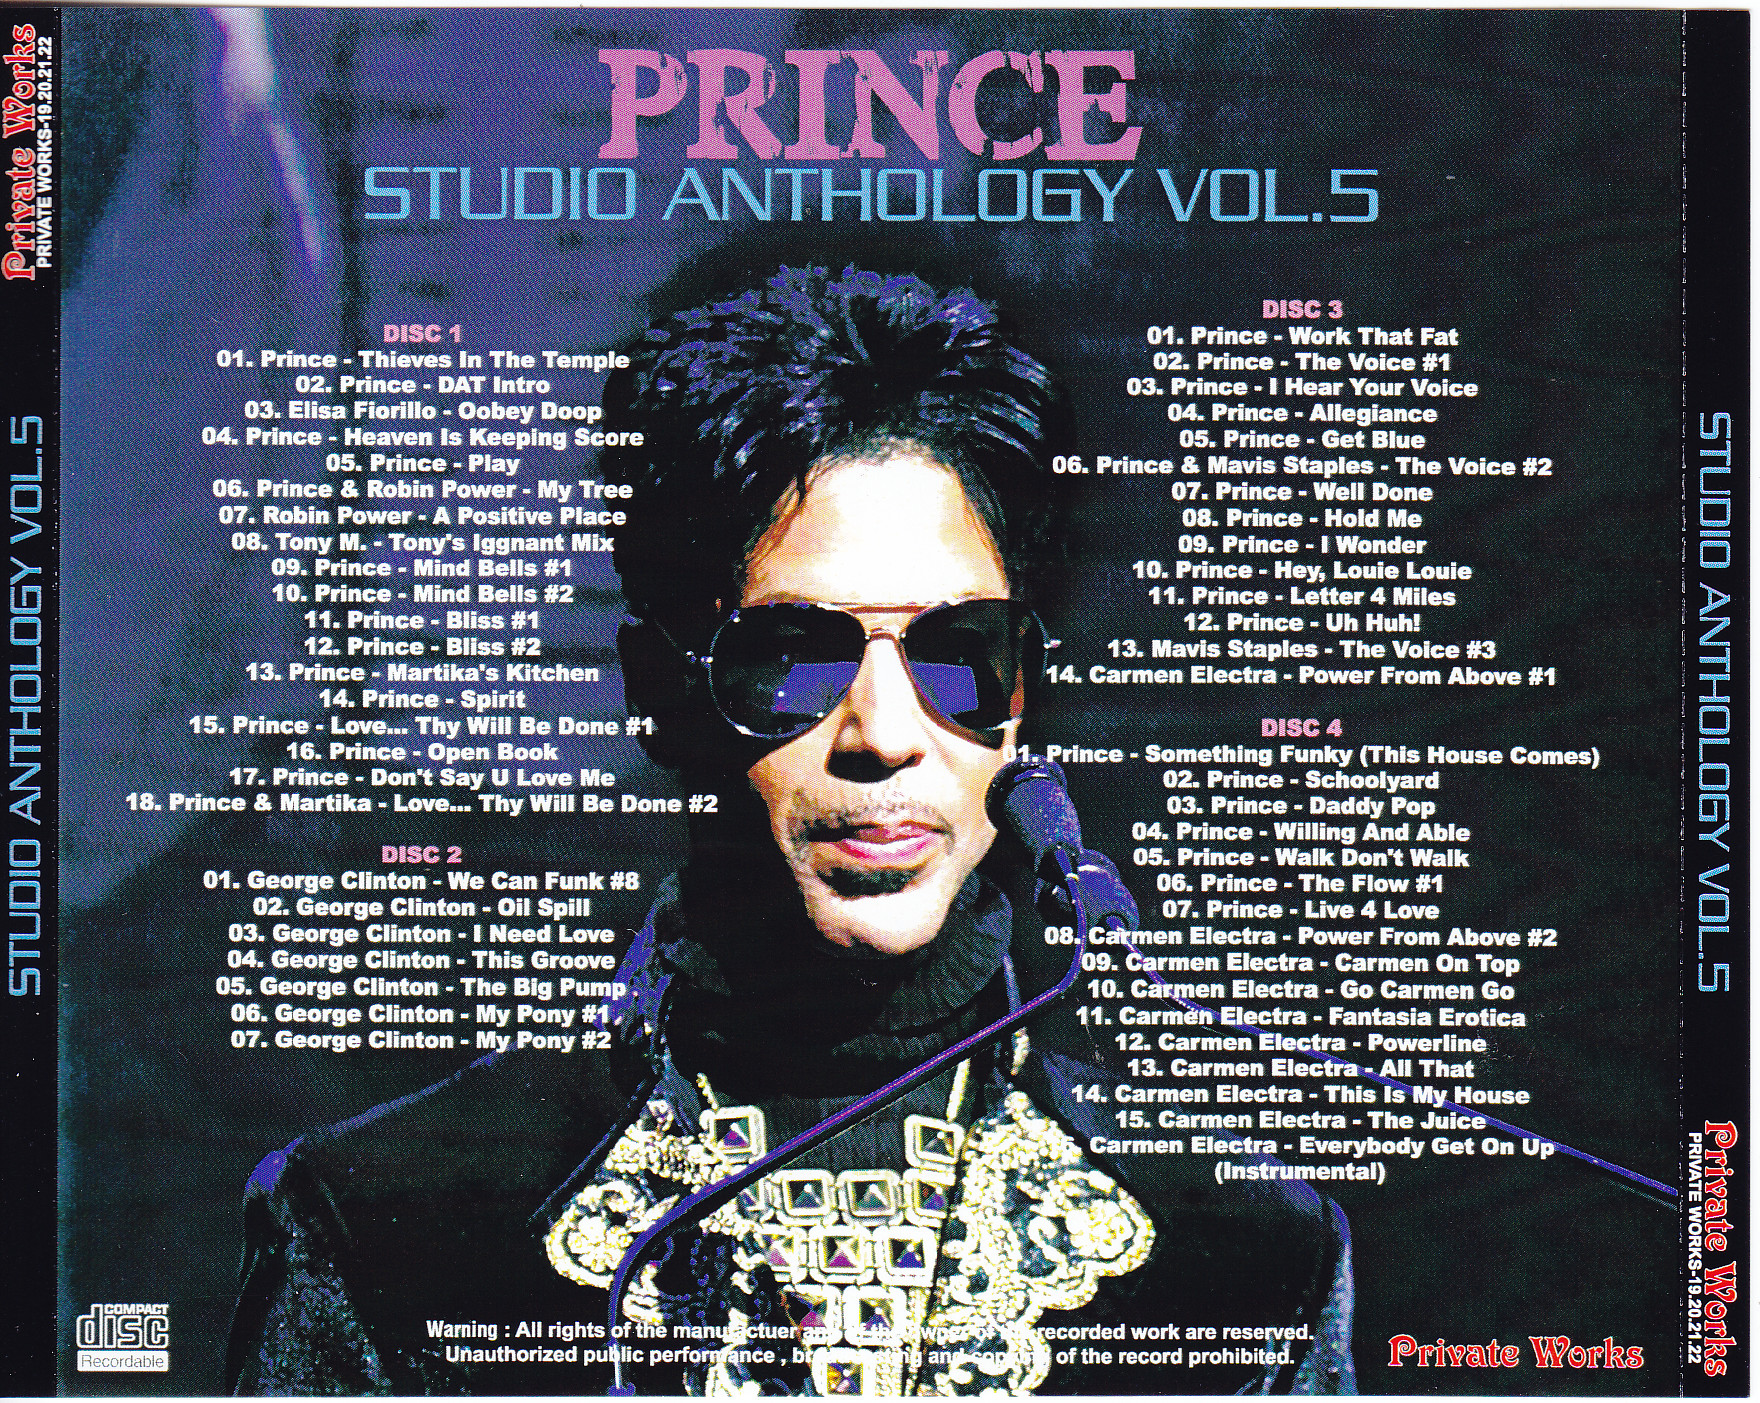 Prince / Studio Anthology Vol 5 /4CDR – GiGinJapan